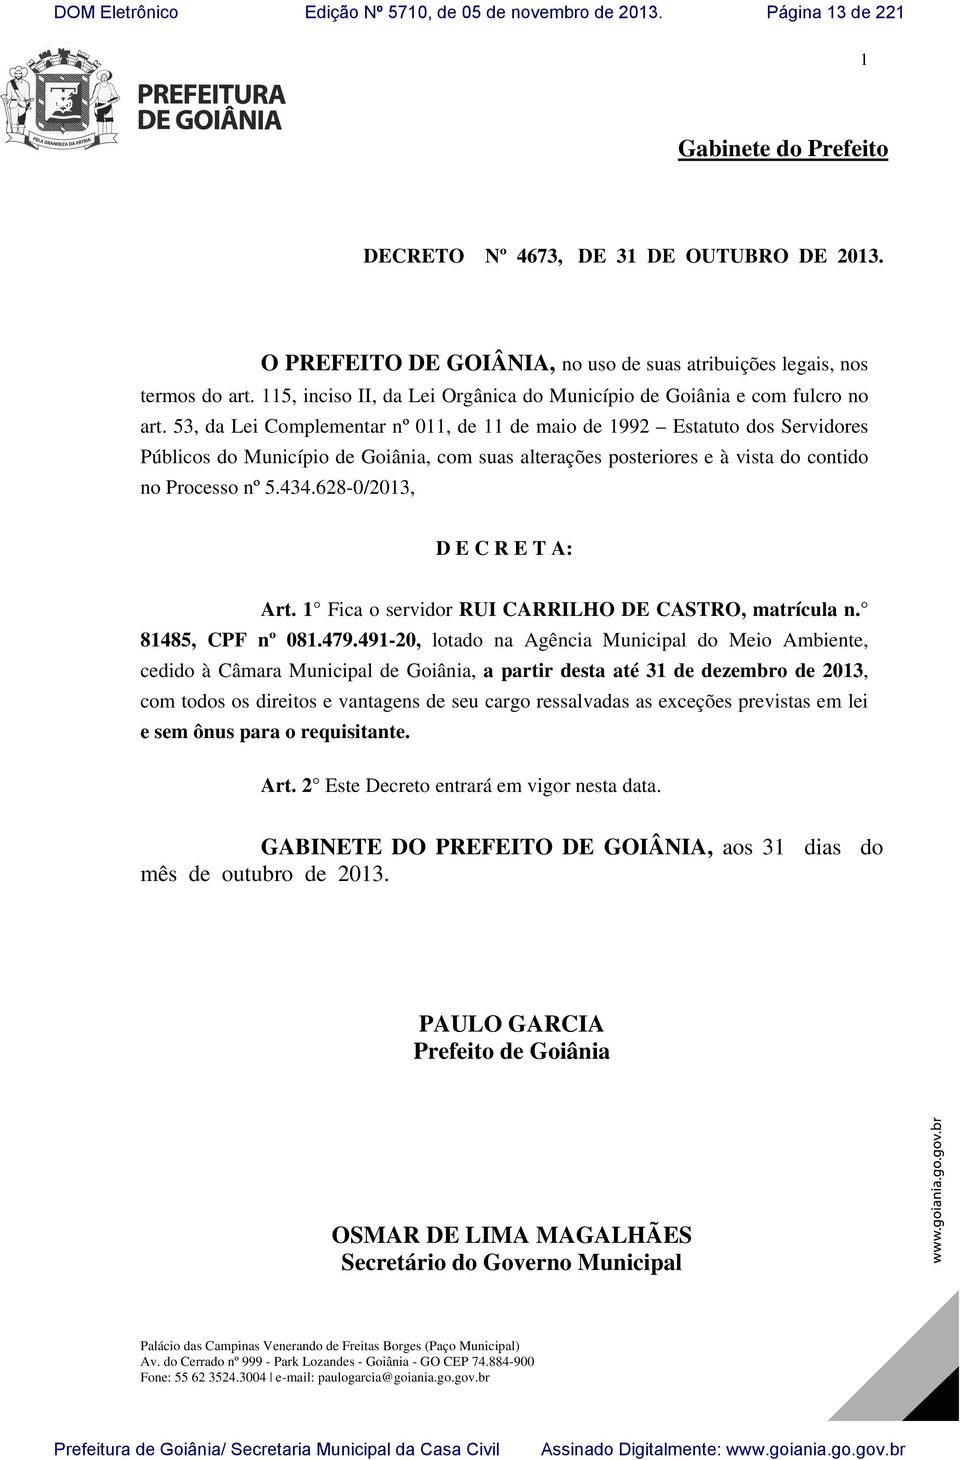 53, da Lei Complementar nº 011, de 11 de maio de 1992 Estatuto dos Servidores Públicos do Município de Goiânia, com suas alterações posteriores e à vista do contido no Processo nº 5.434.